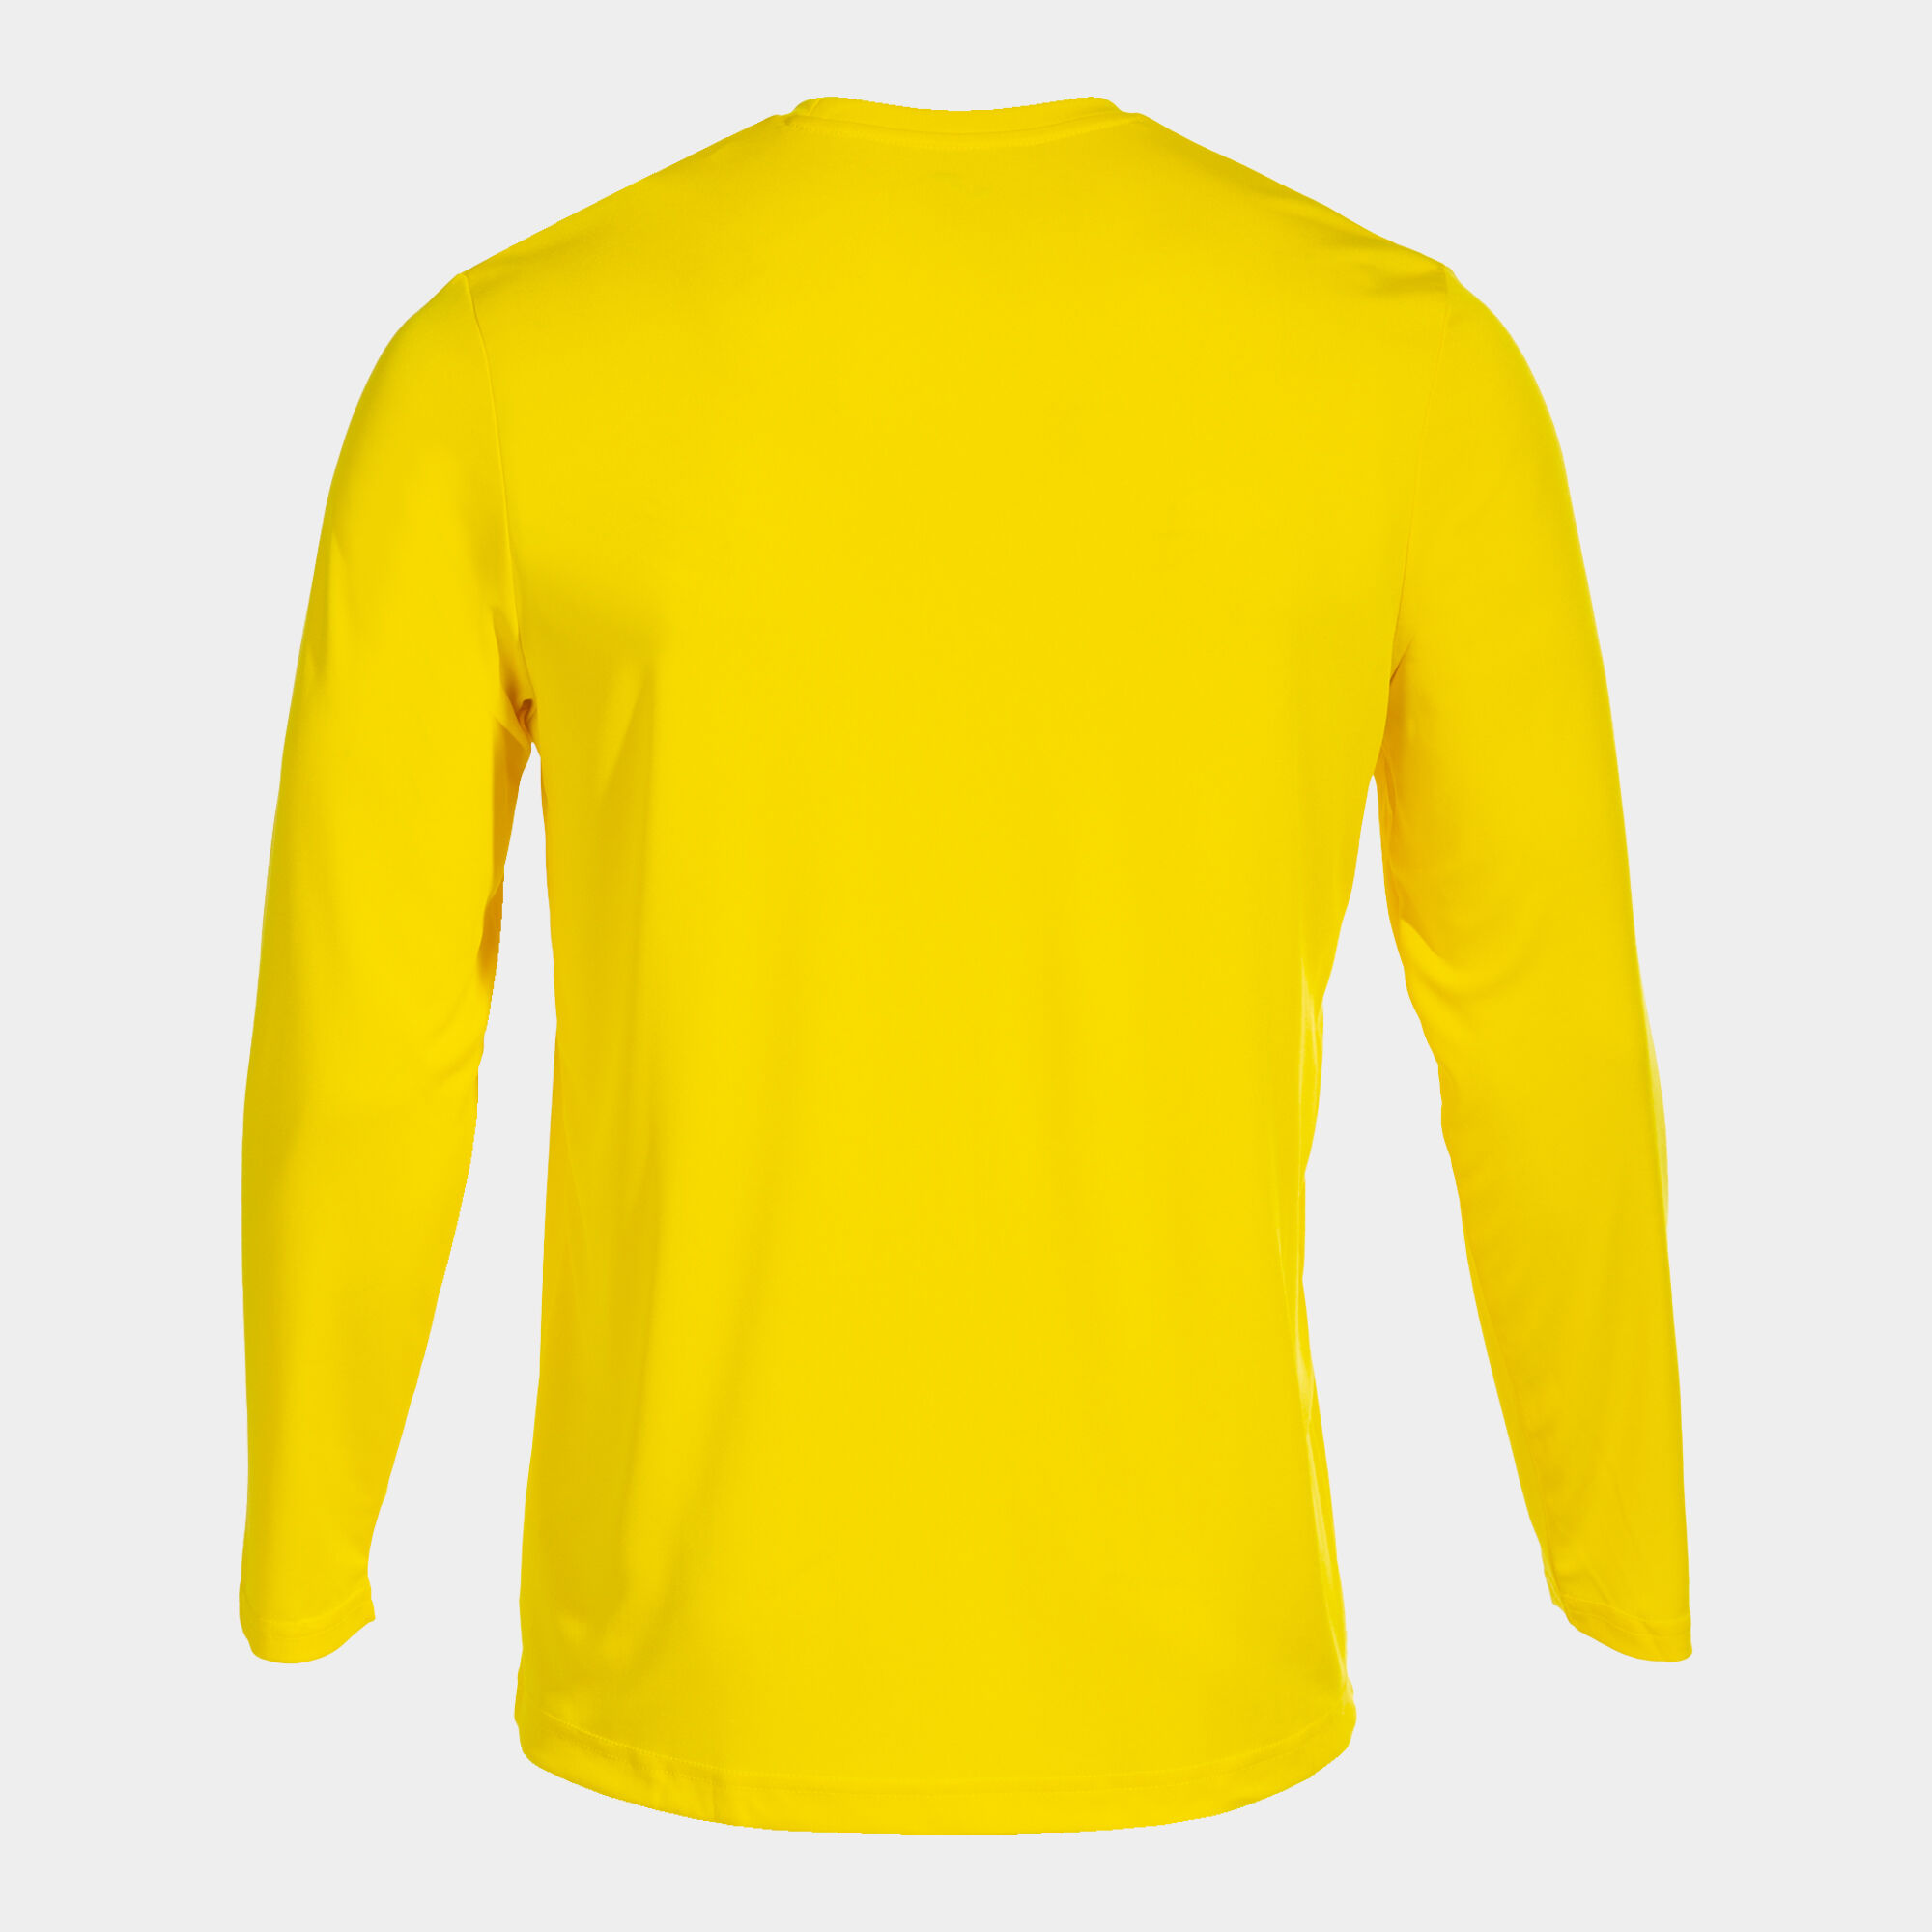 Camiseta JUNIOR de manga larga amarilla - STAMP